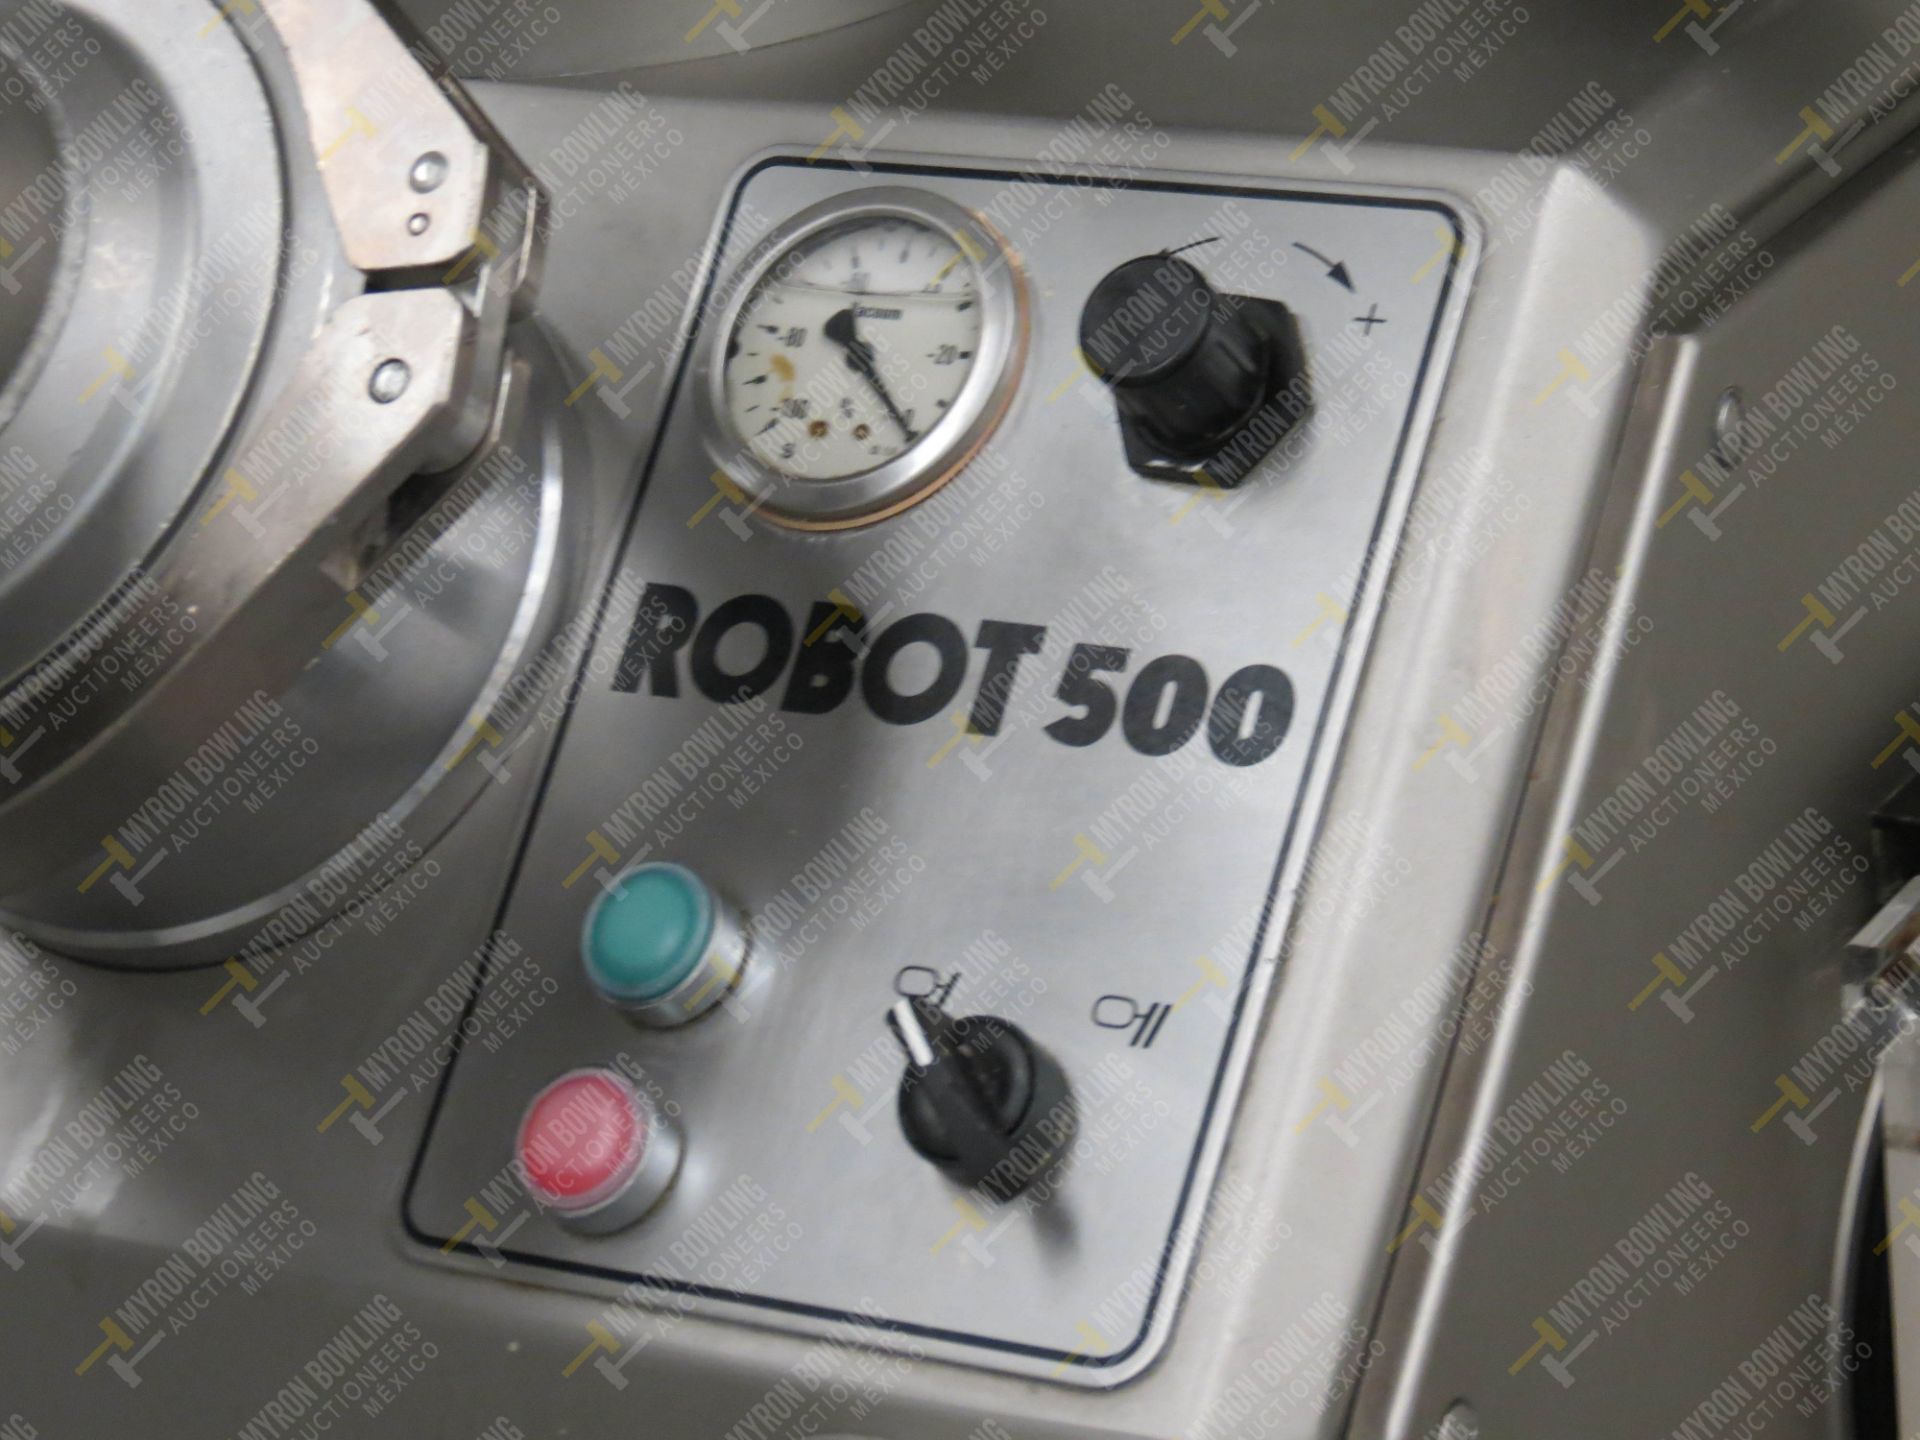 Dosificador neumático marca Vemag, Modelo Robot 500, No. de Serie 1284993, año 2016 con … - Image 7 of 11